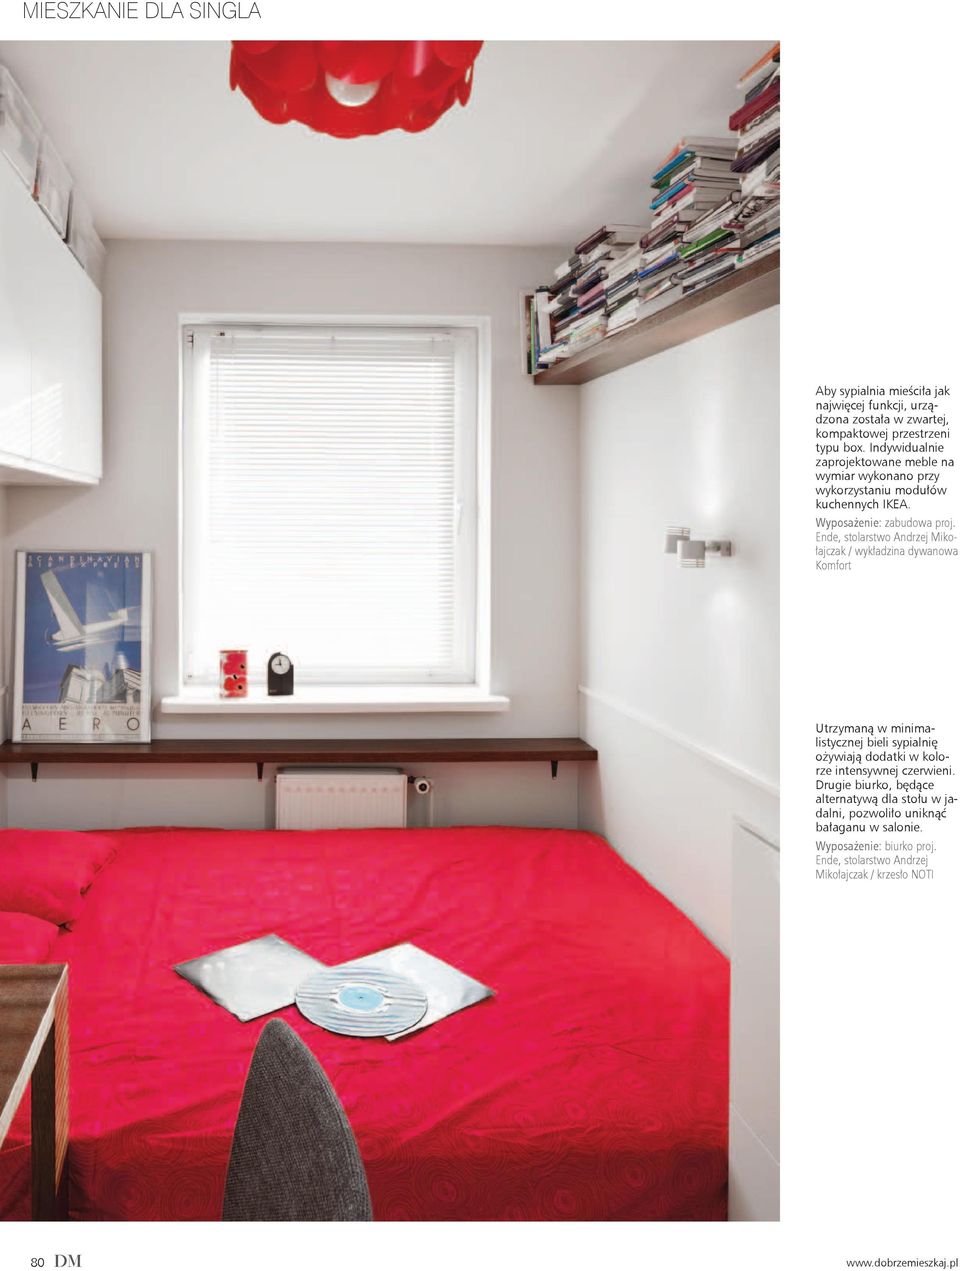 Ende, stolarstwo Andrzej Mikołajczak / wykładzina dywanowa Komfort Utrzymaną w minimalistycznej bieli sypialnię ożywiają dodatki w kolorze